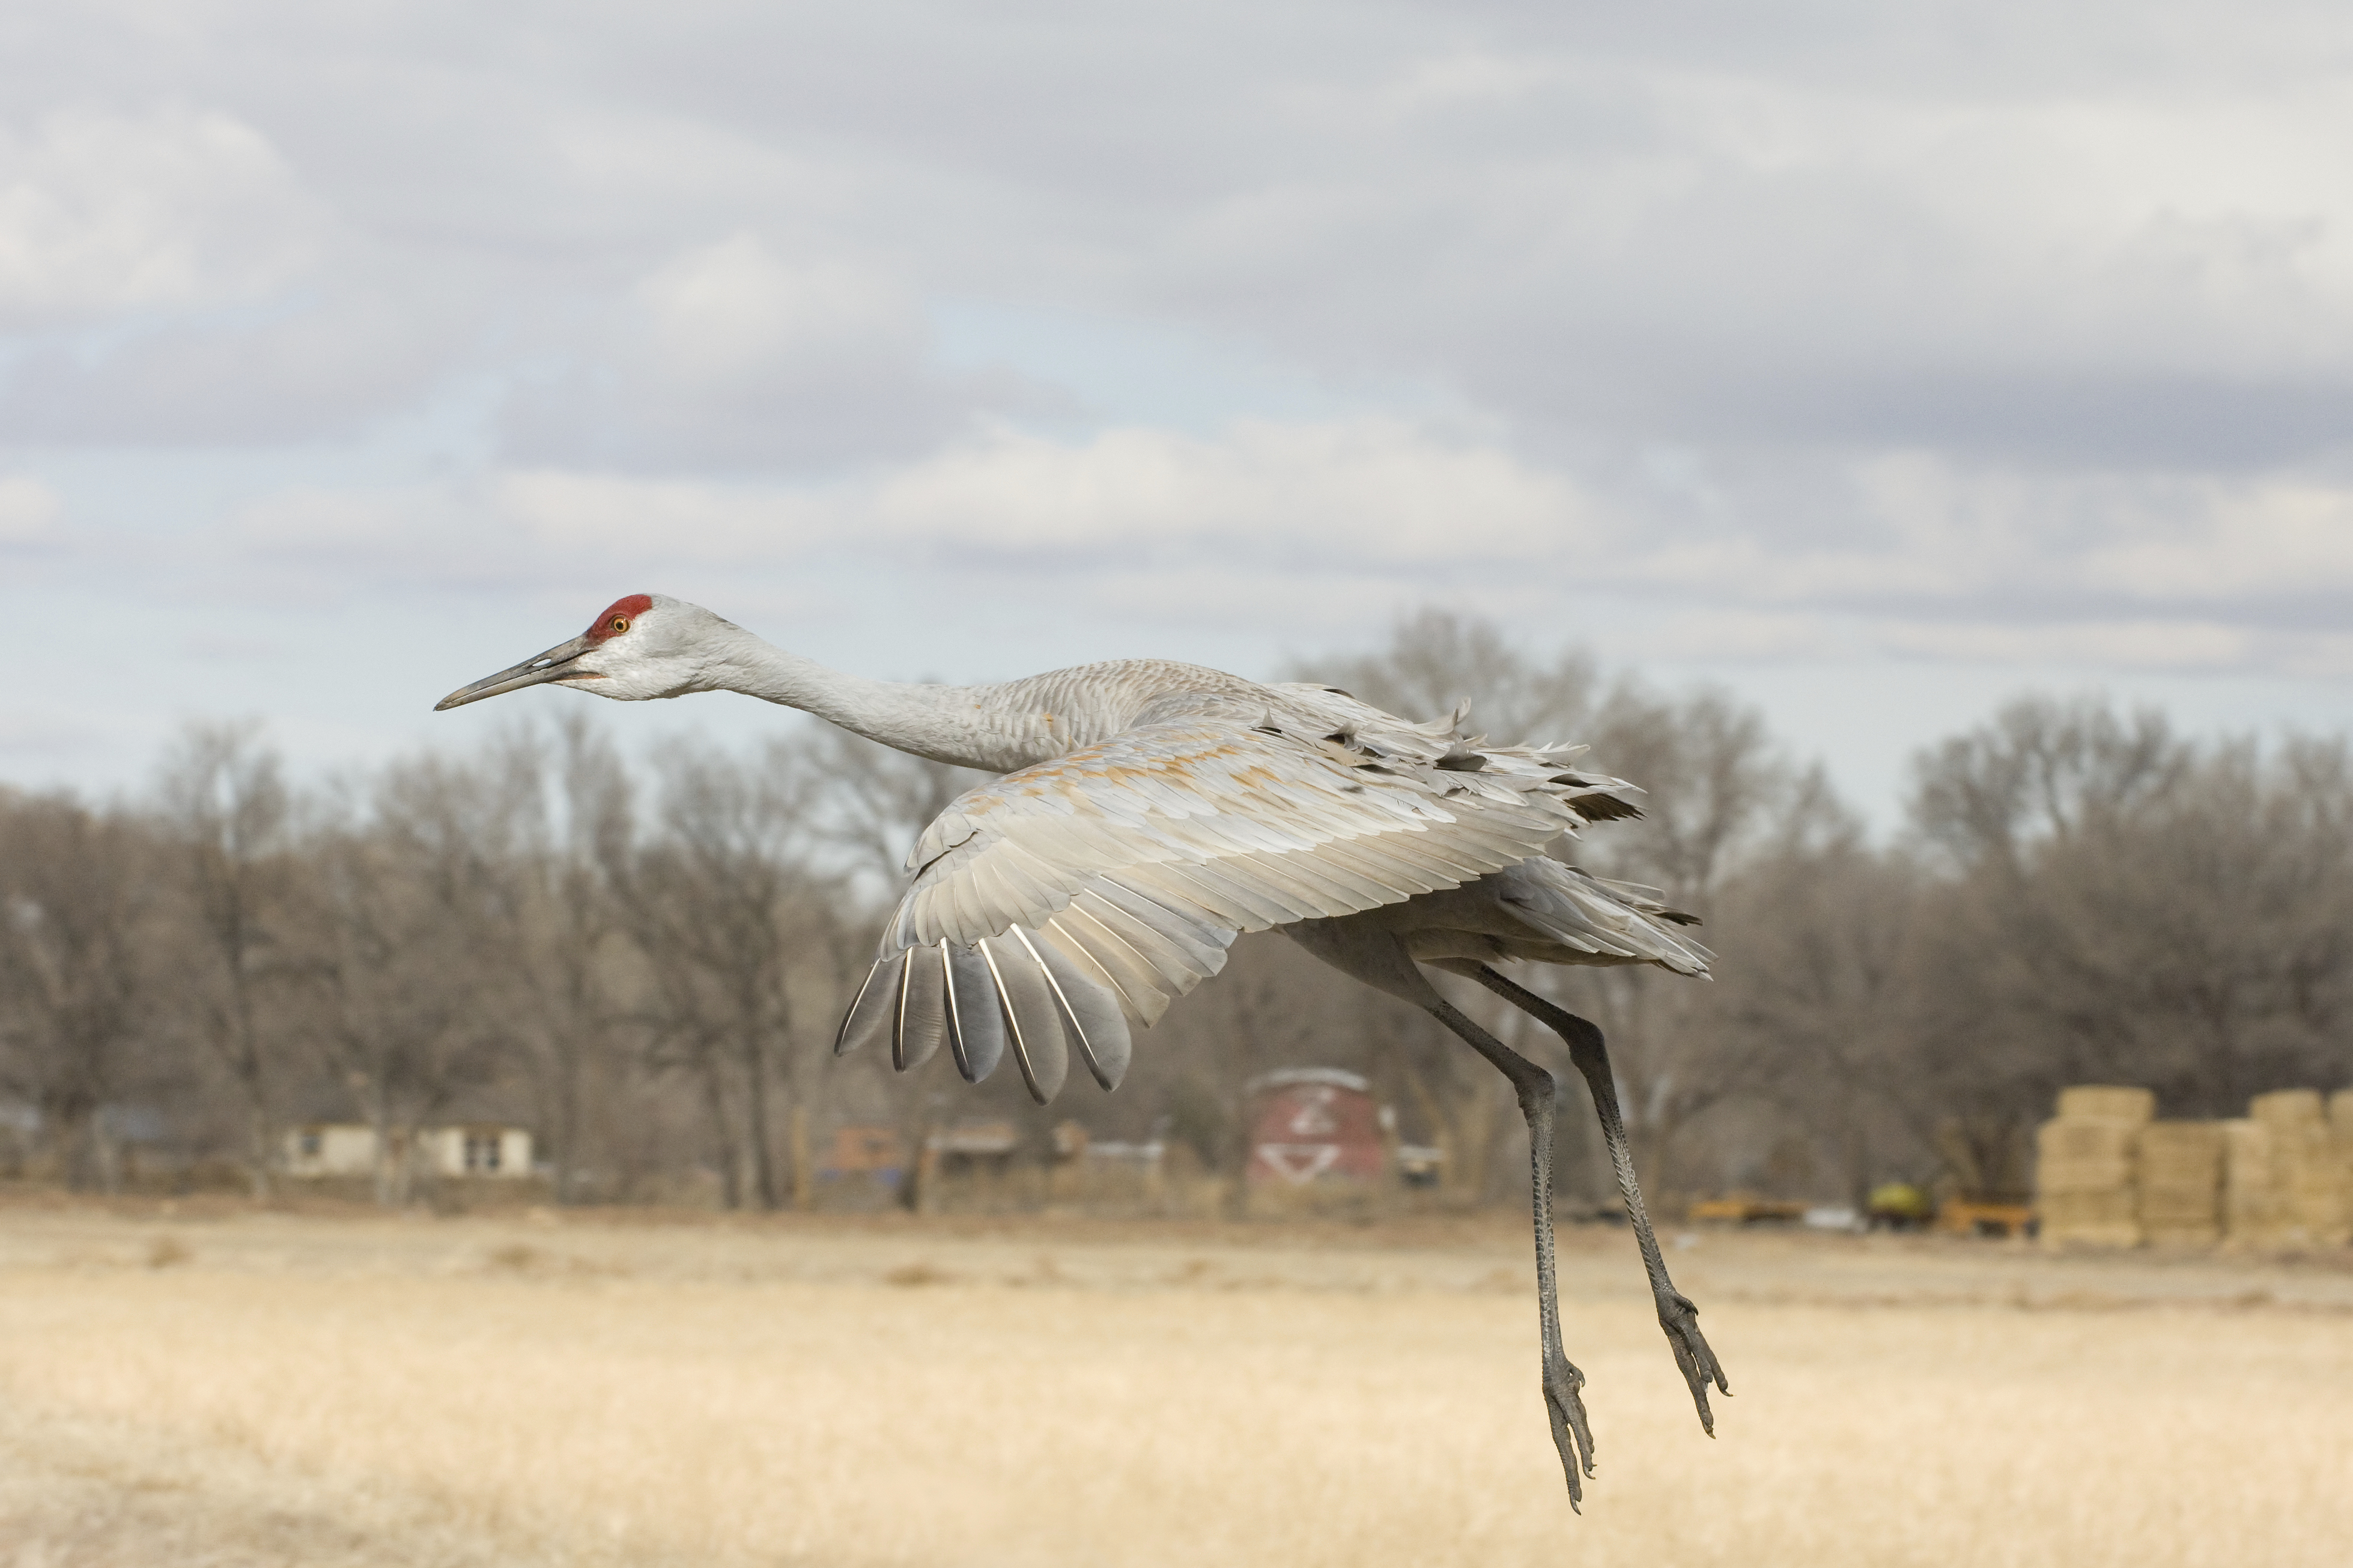 Lone sandhill crane in flight, New Mexico